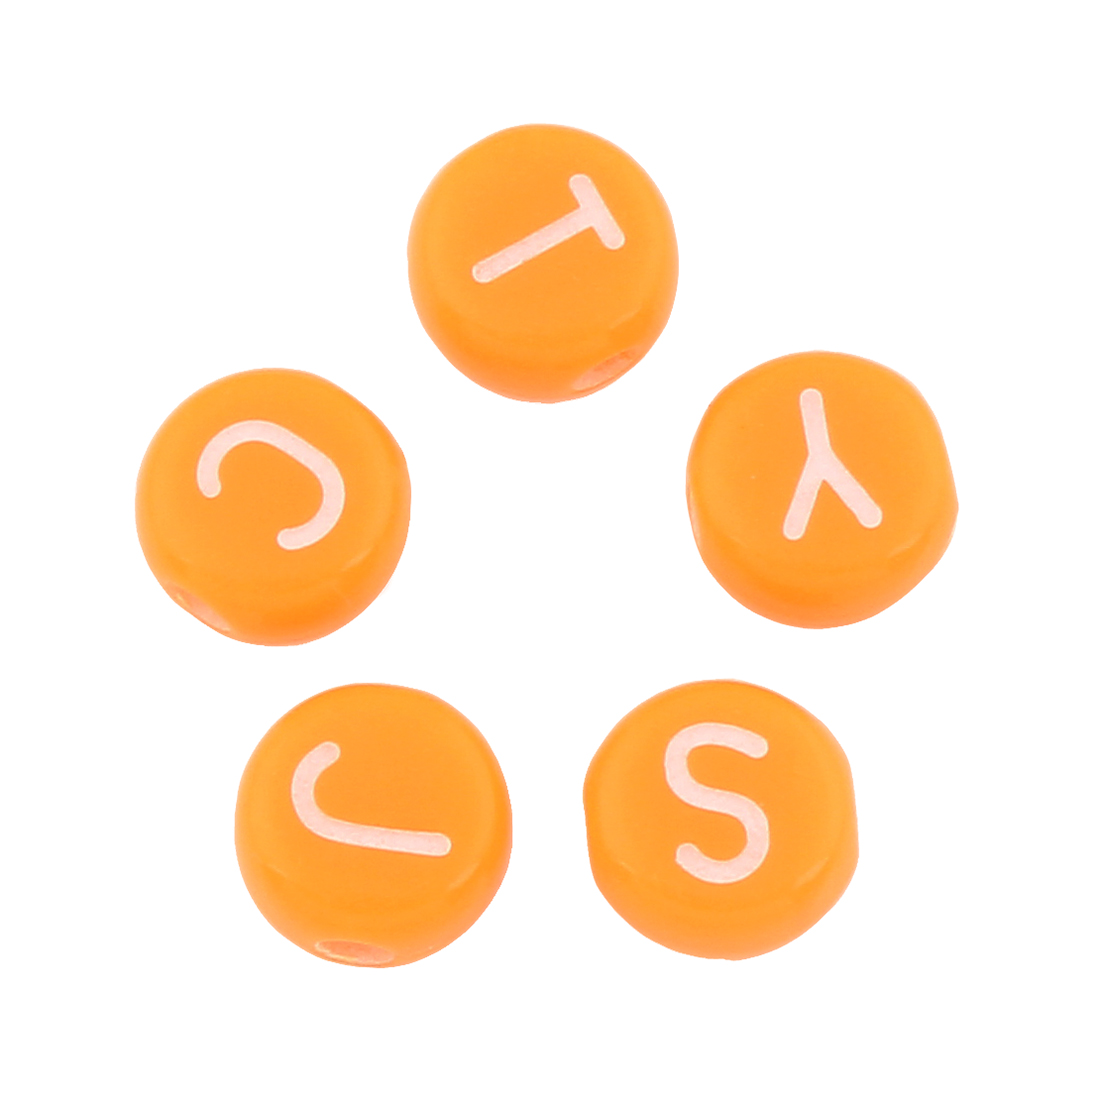 6:レディッシュオレンジ